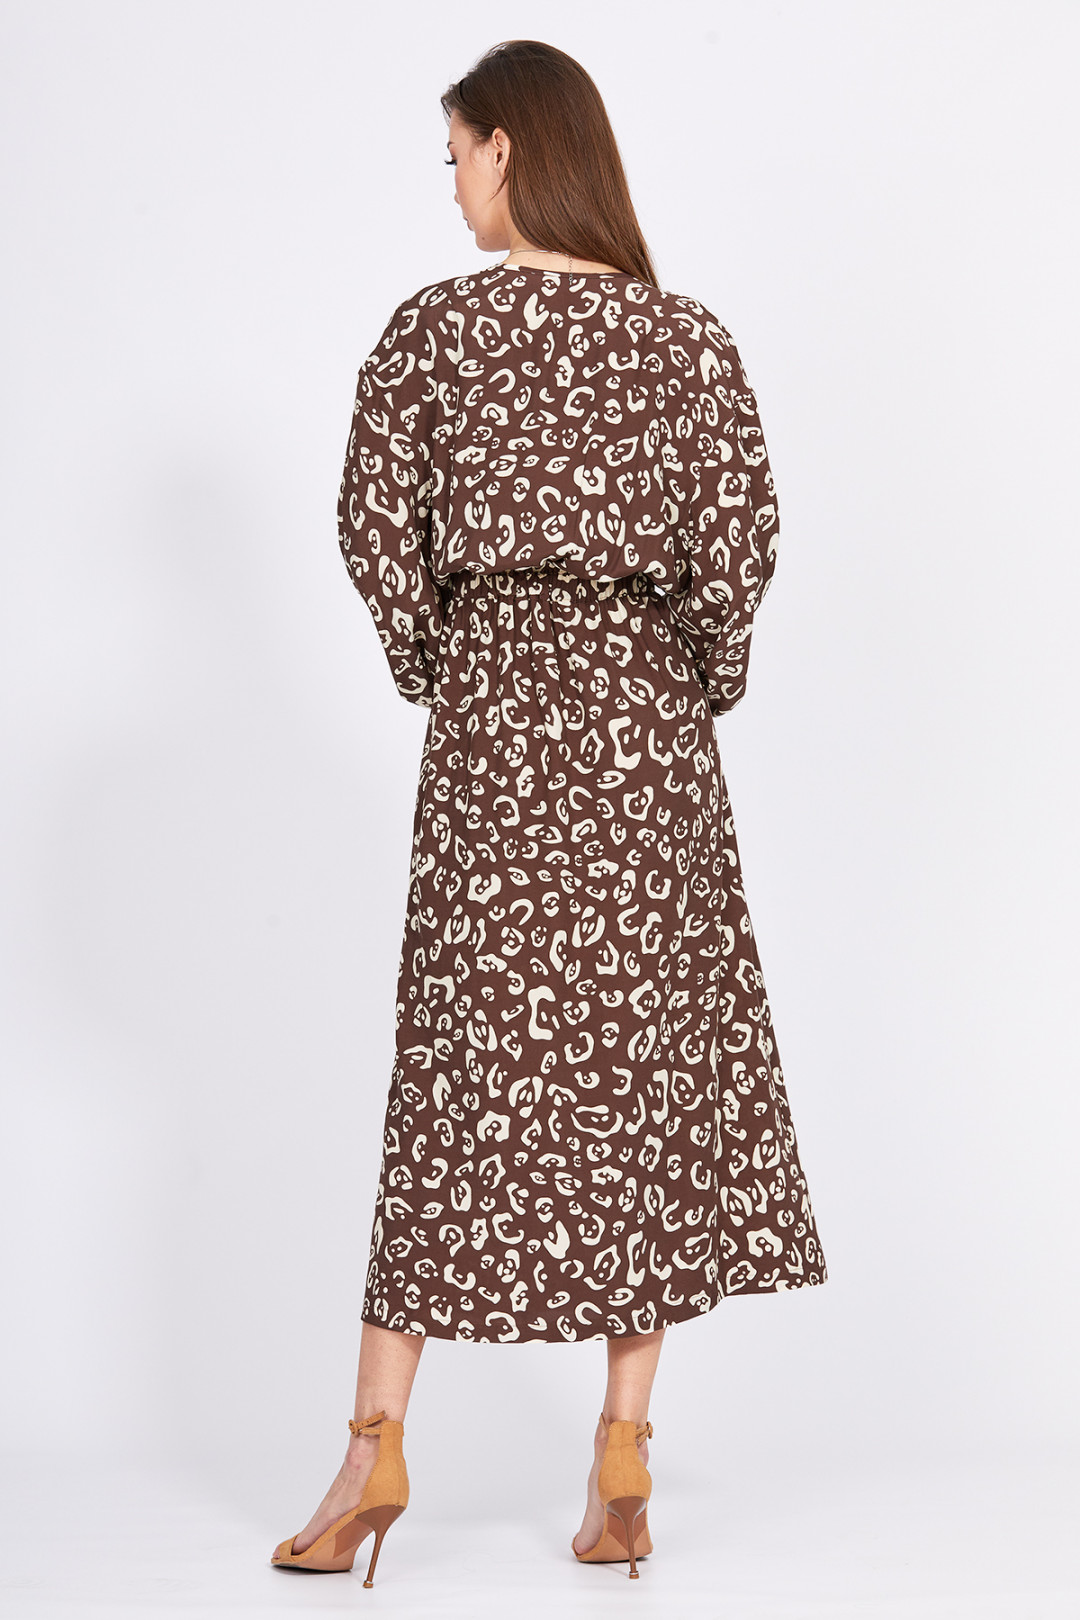 Платье Эола Стиль 2404 коричневый/ рисунок беж